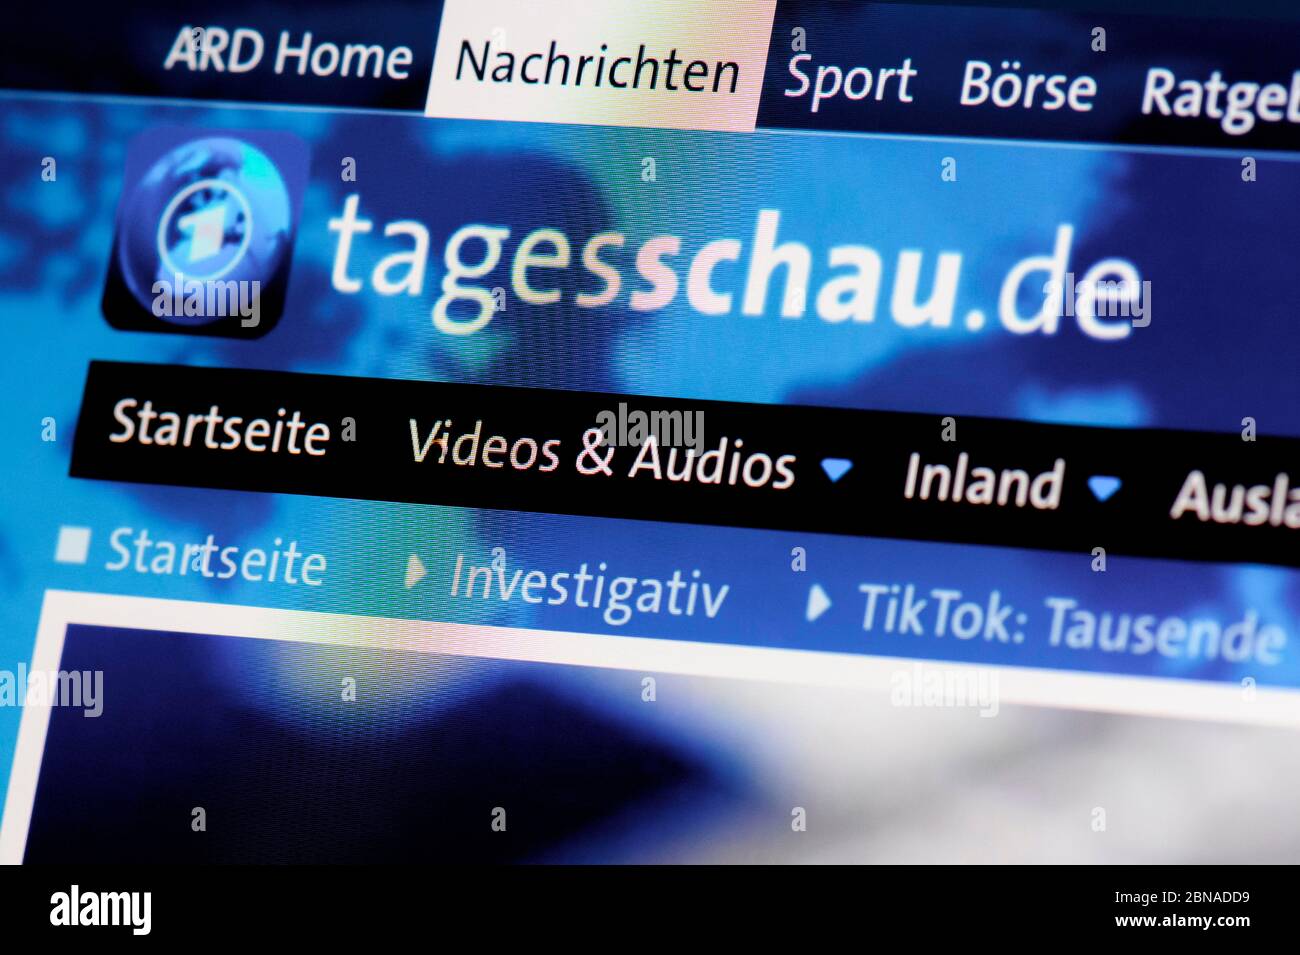 Tagesschau.de Sito Web, Notizie, Notizie sul giorno, visualizzazione, primo piano Foto Stock